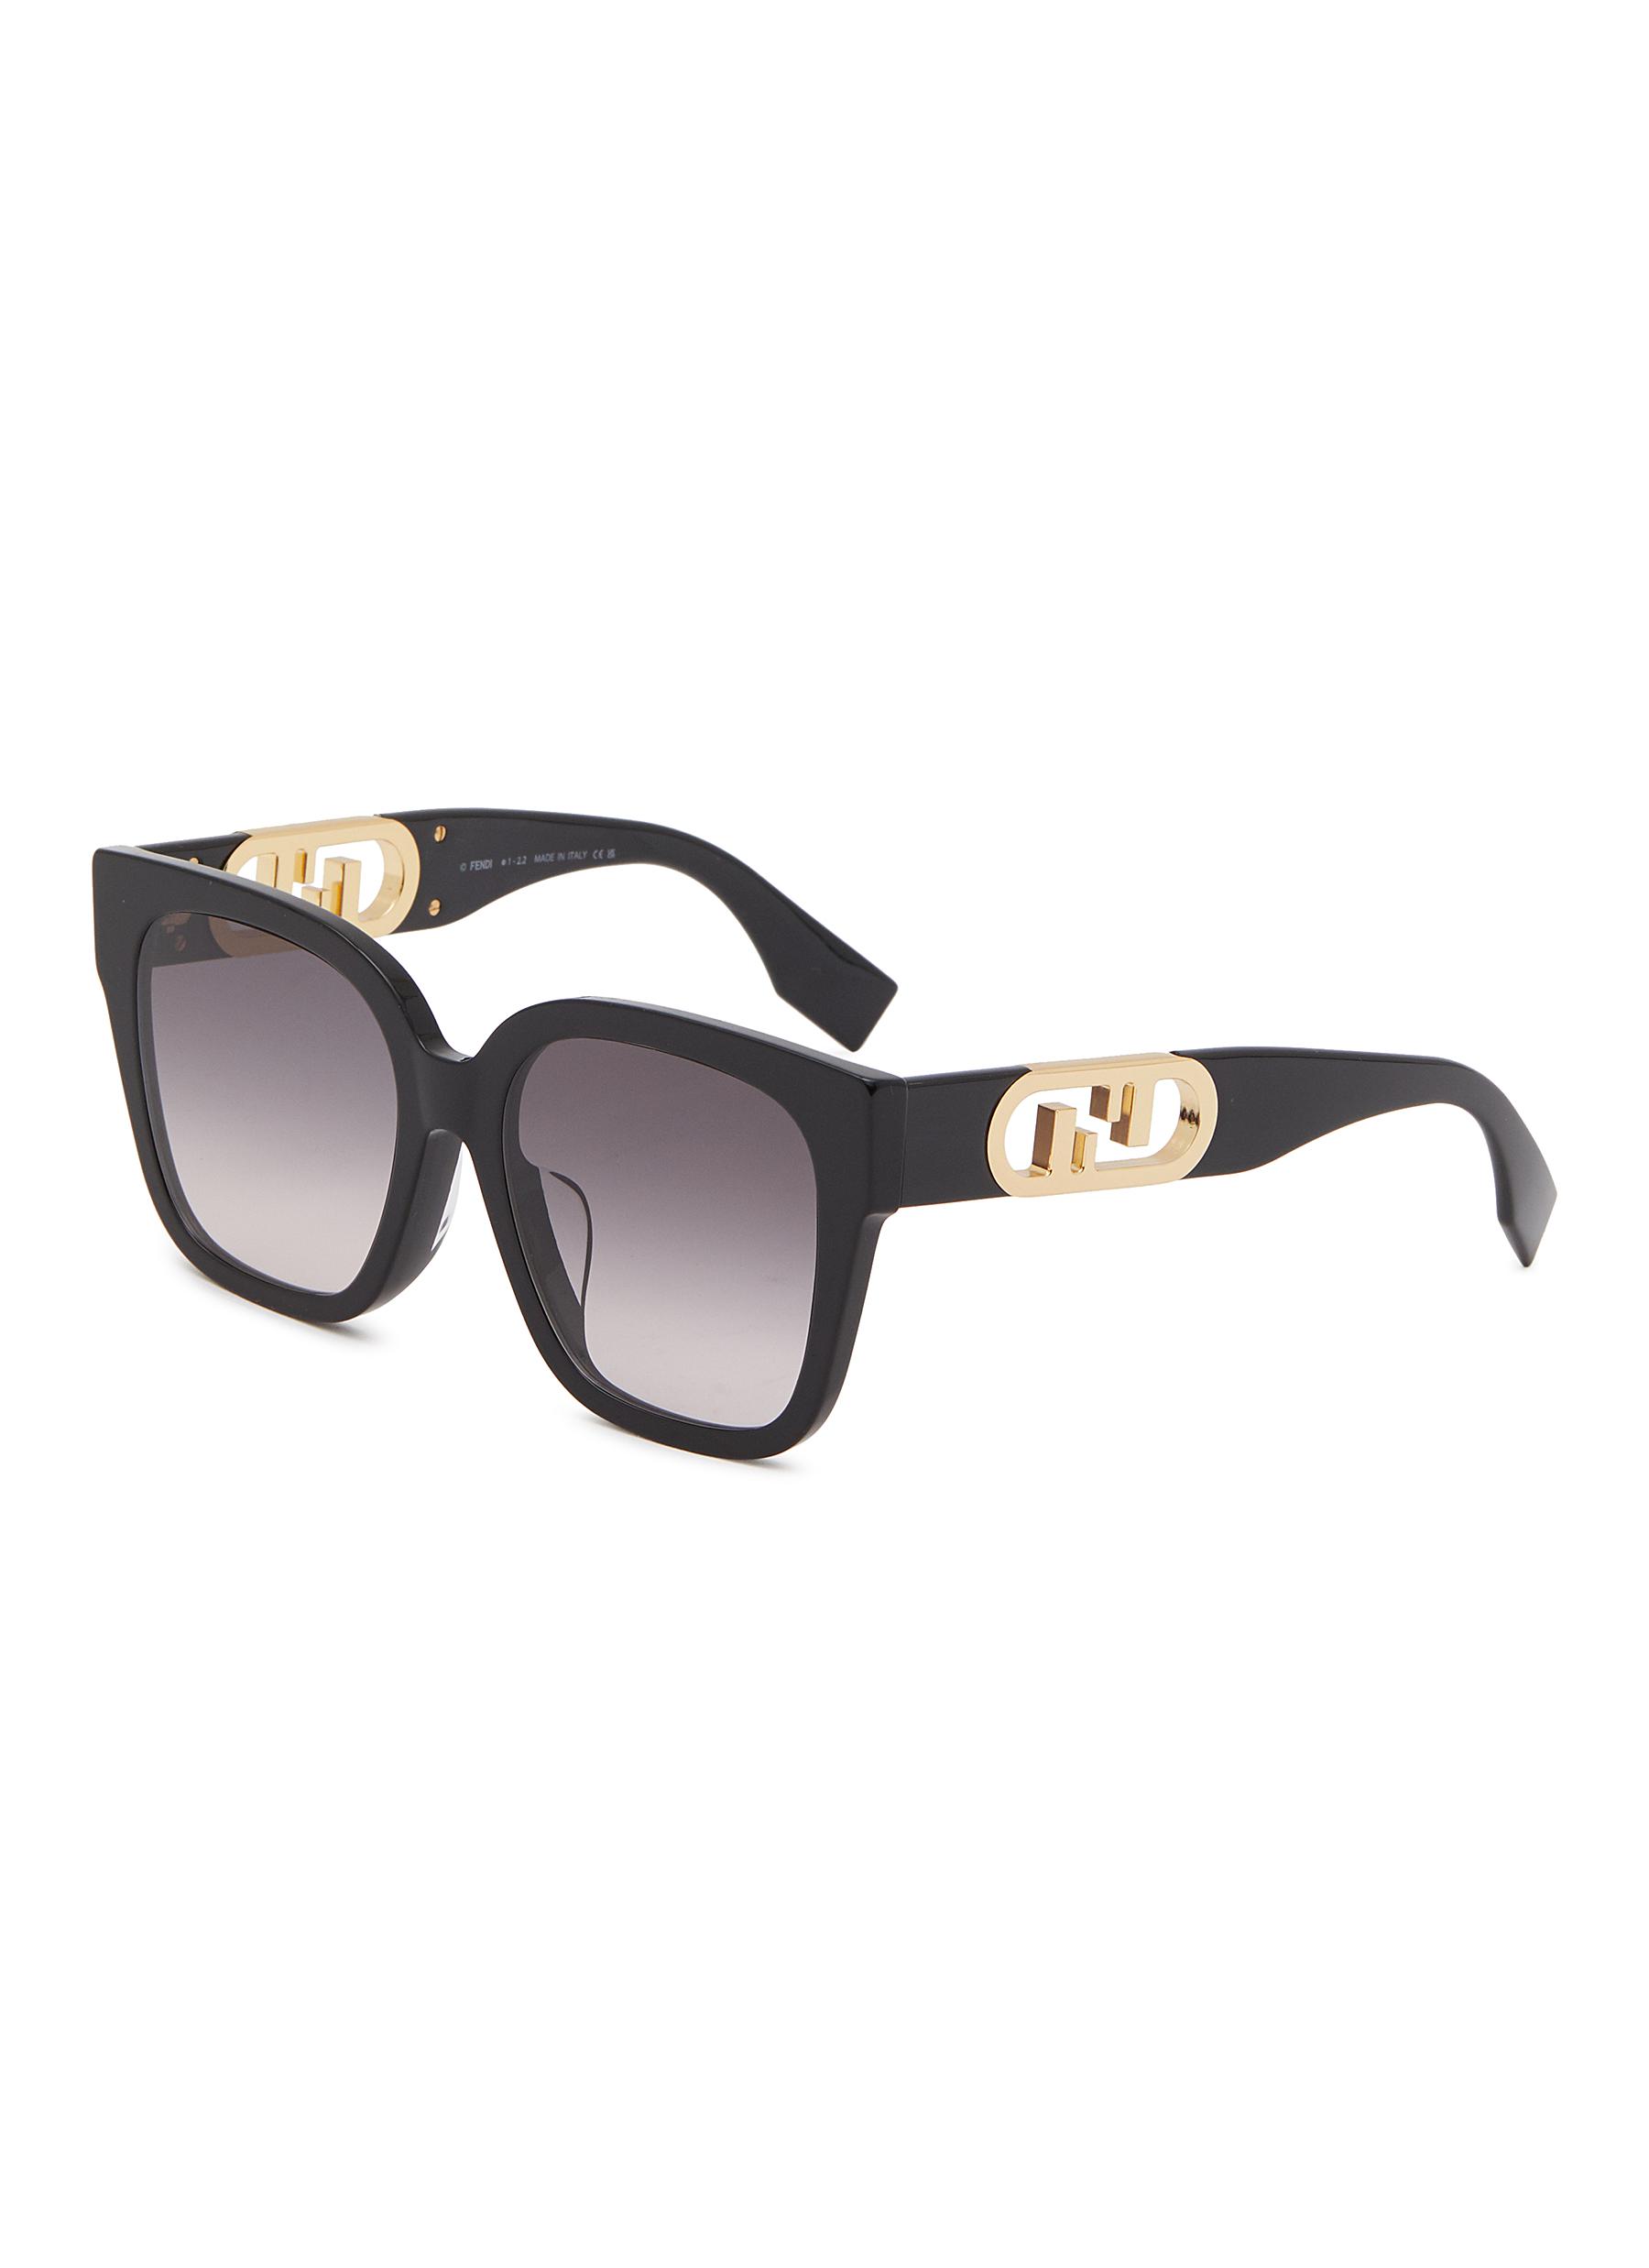 Fendi - O'Lock - Rectangular Sunglasses - White - Sunglasses